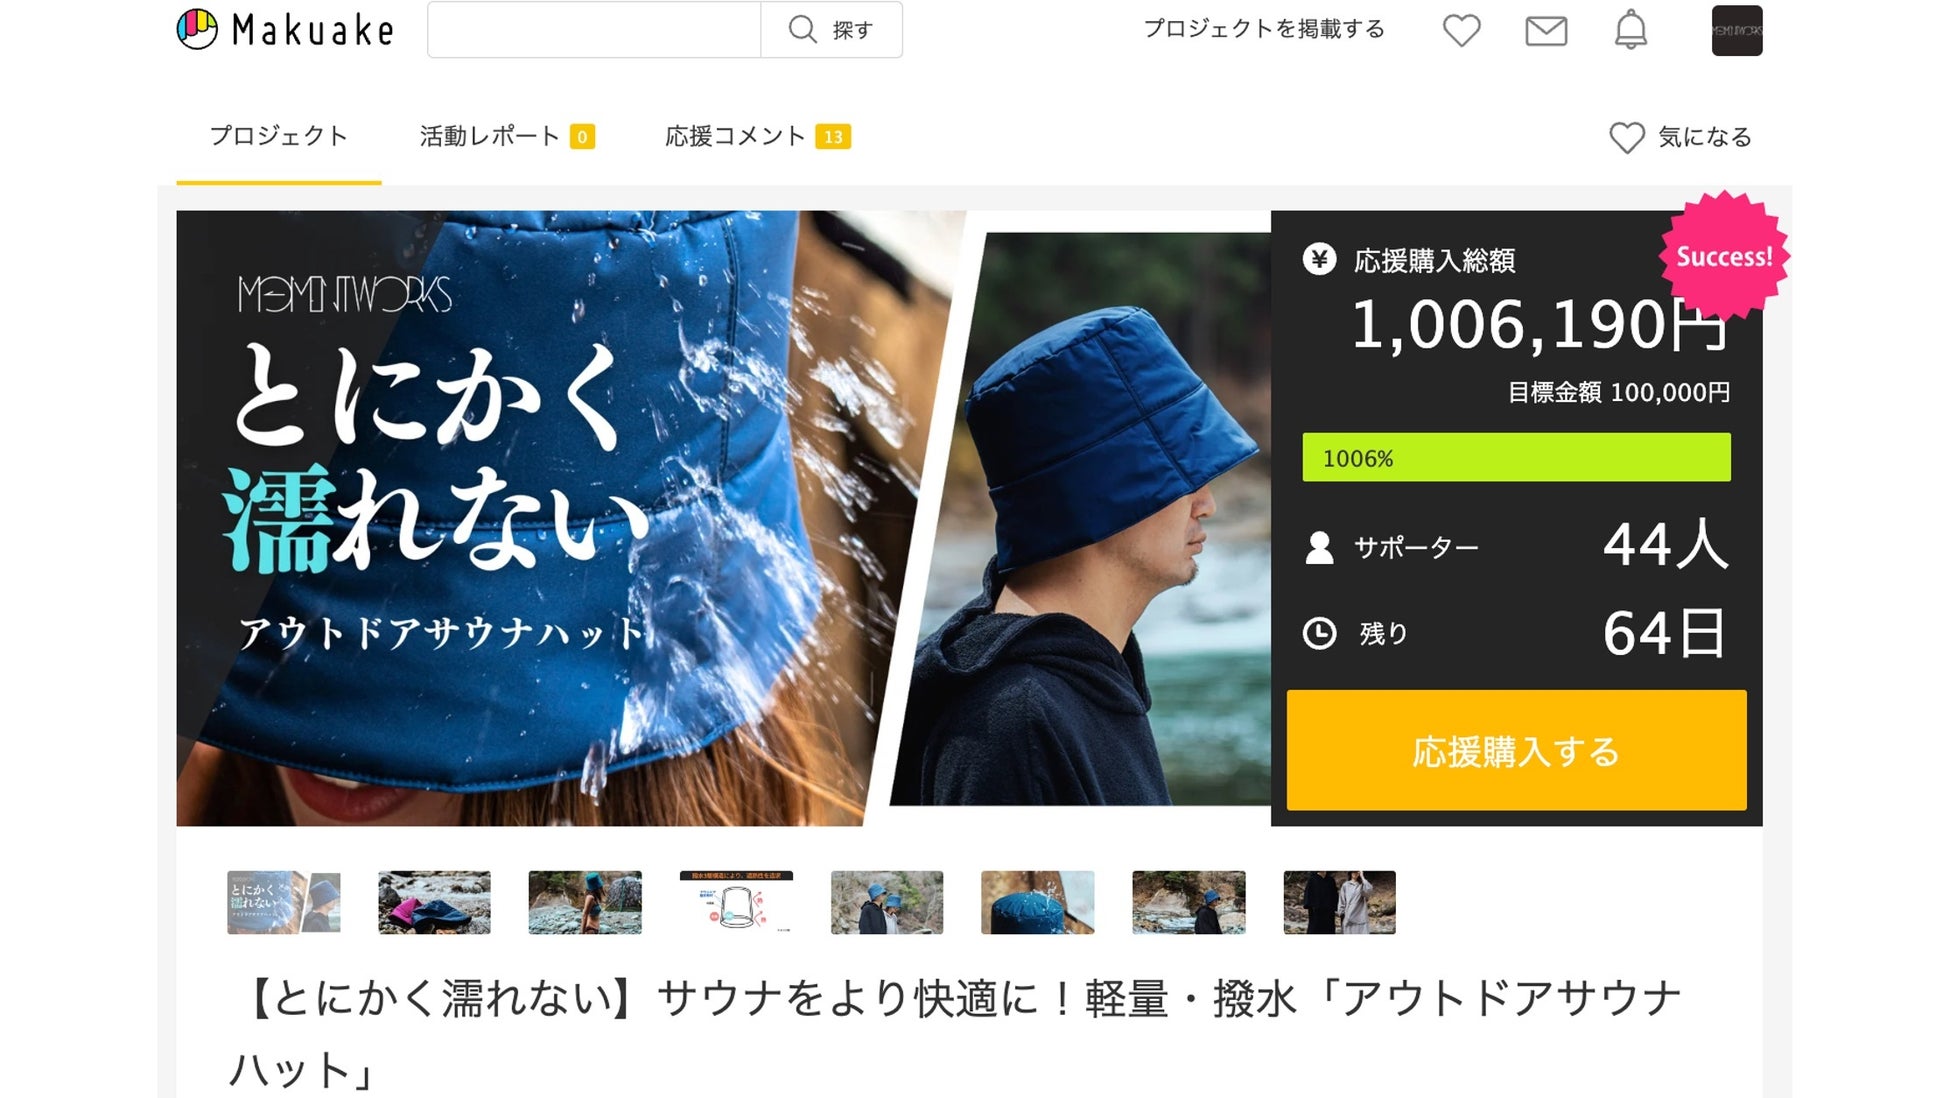 【公開初日で100万円突破】Moment Worksの「とにかく濡れないアウトドアサウナハット」がMakuakeにて販売開始のサブ画像1